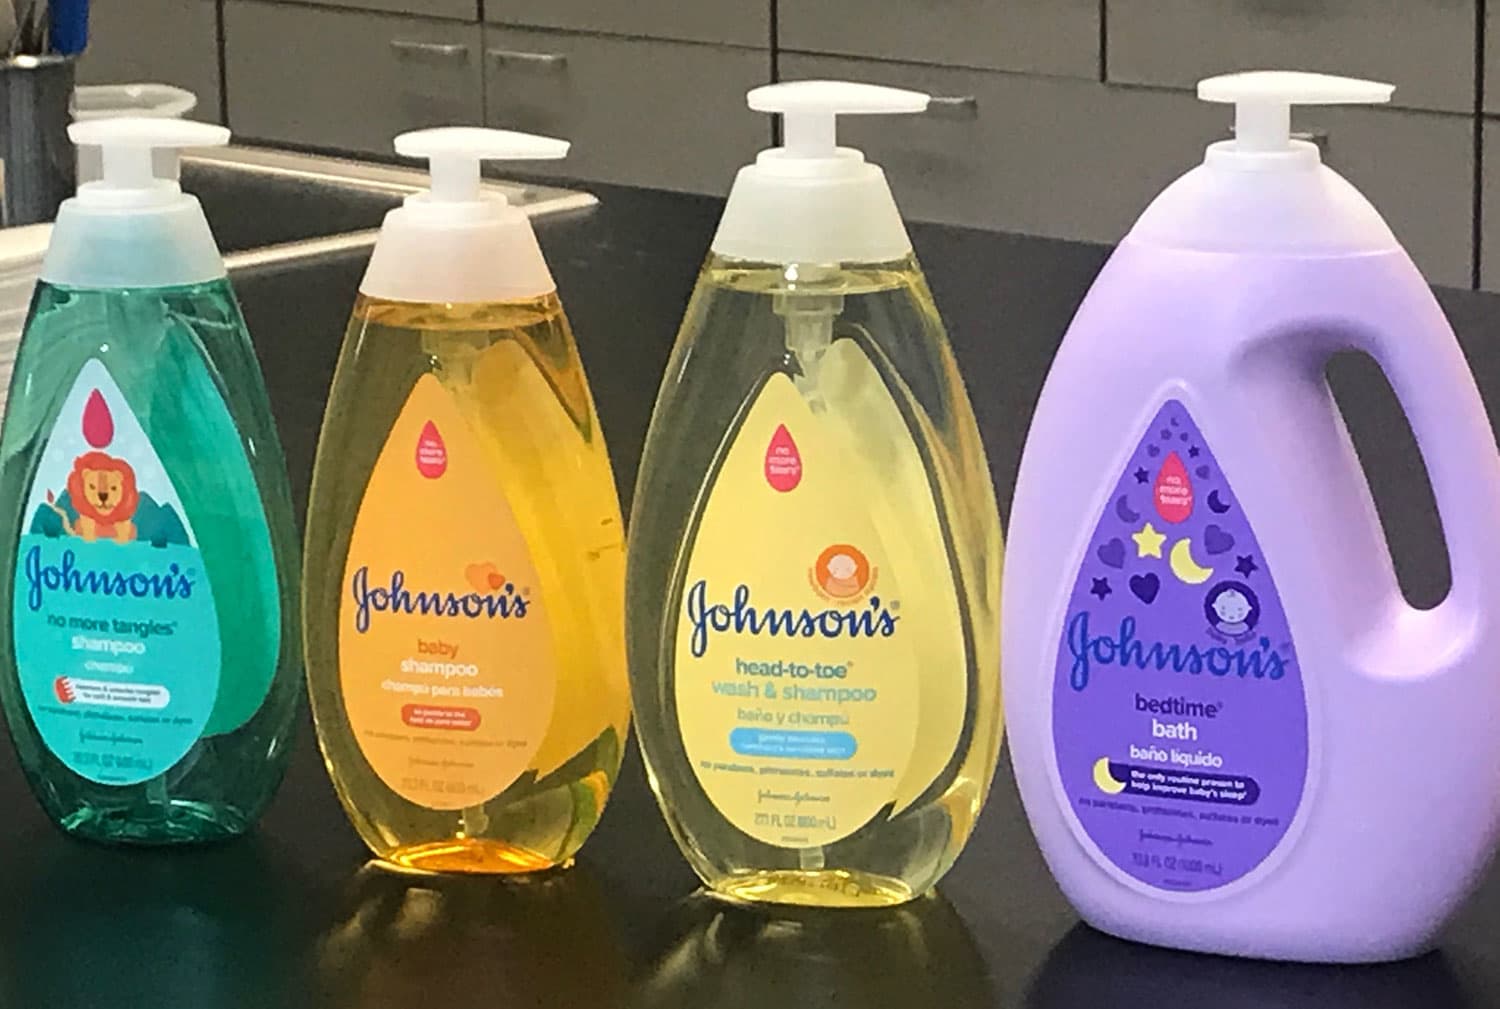 j&j shampoo